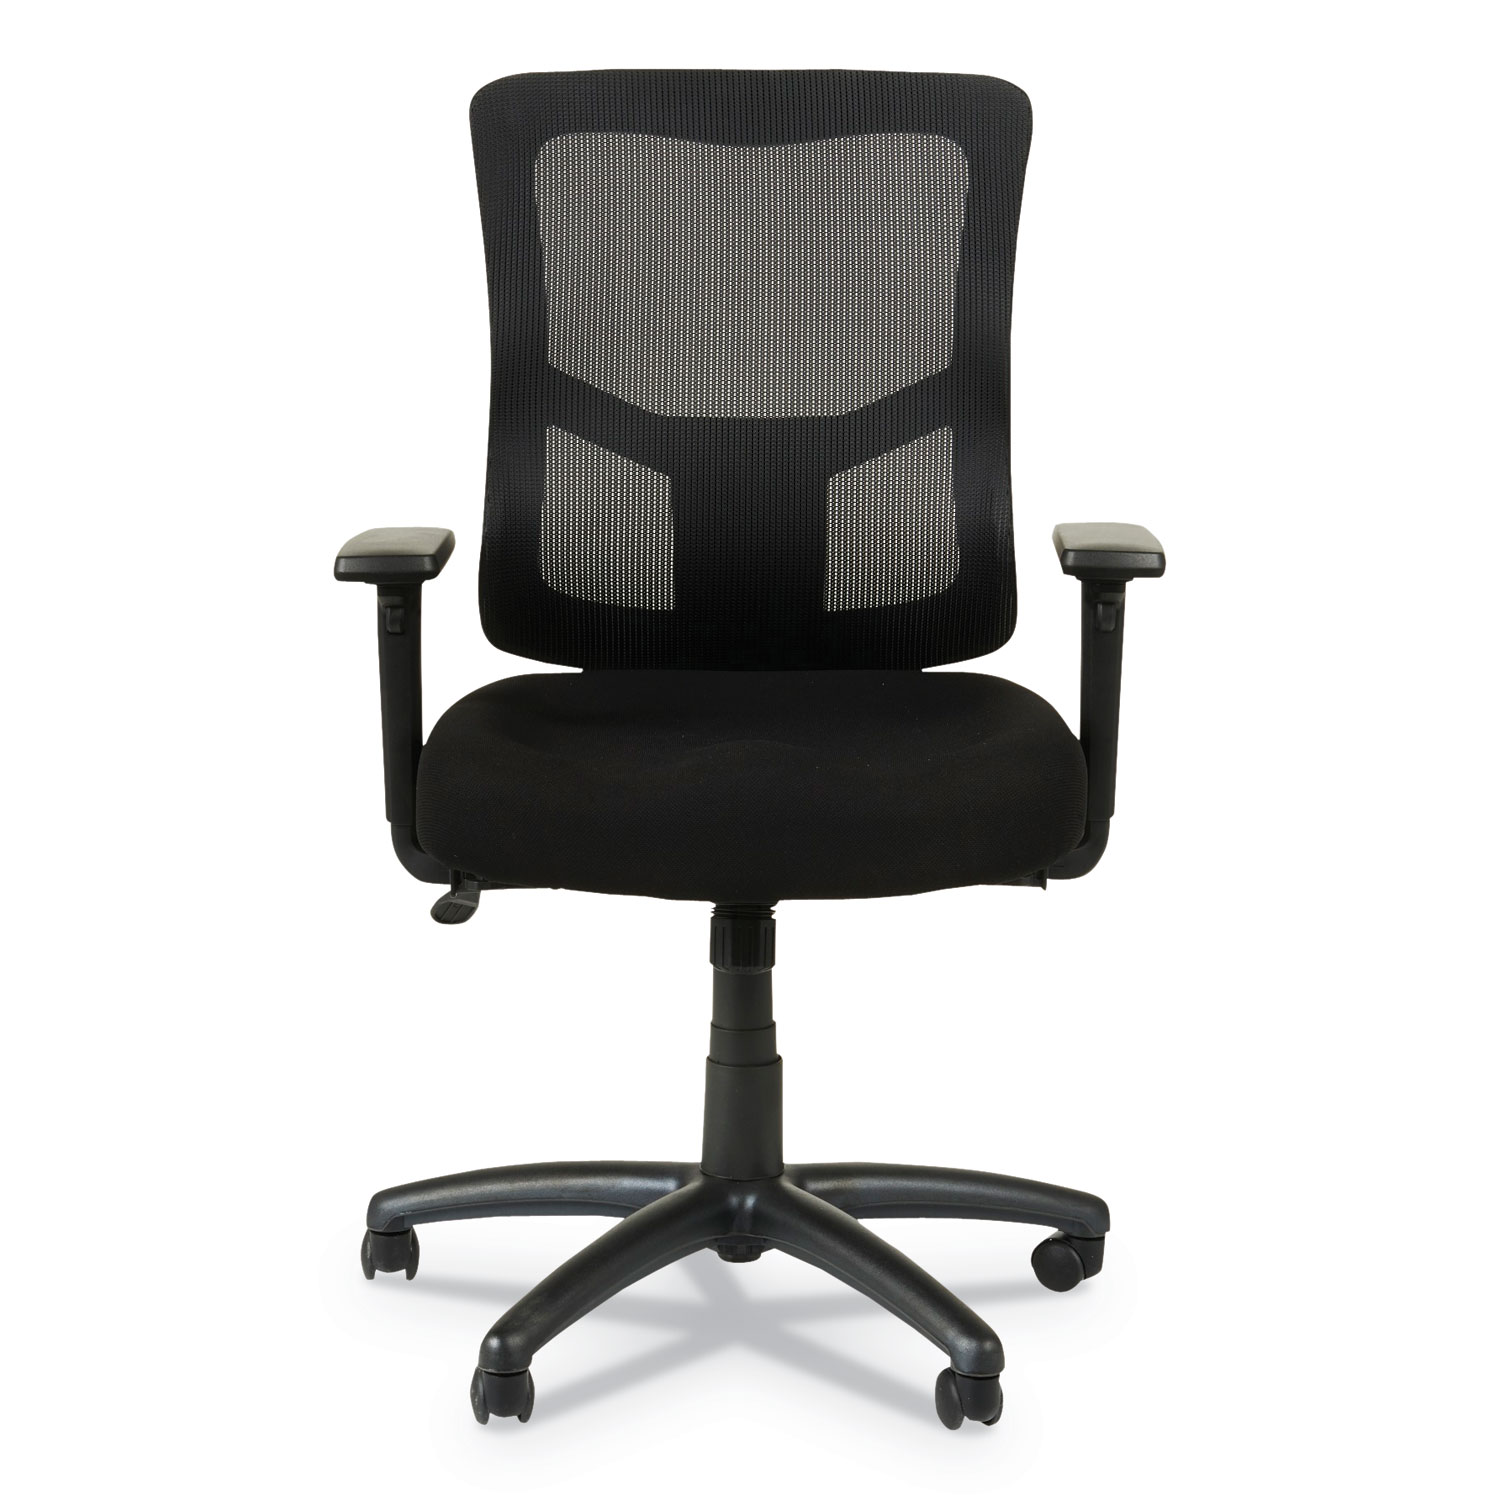  Alera ALEELT4214F Alera Elusion II Series Mesh Mid-Back Swivel/Tilt Chair with Adjustable Arms, Up to 275 lbs., Black Seat/Back, Black Base (ALEELT4214F) 